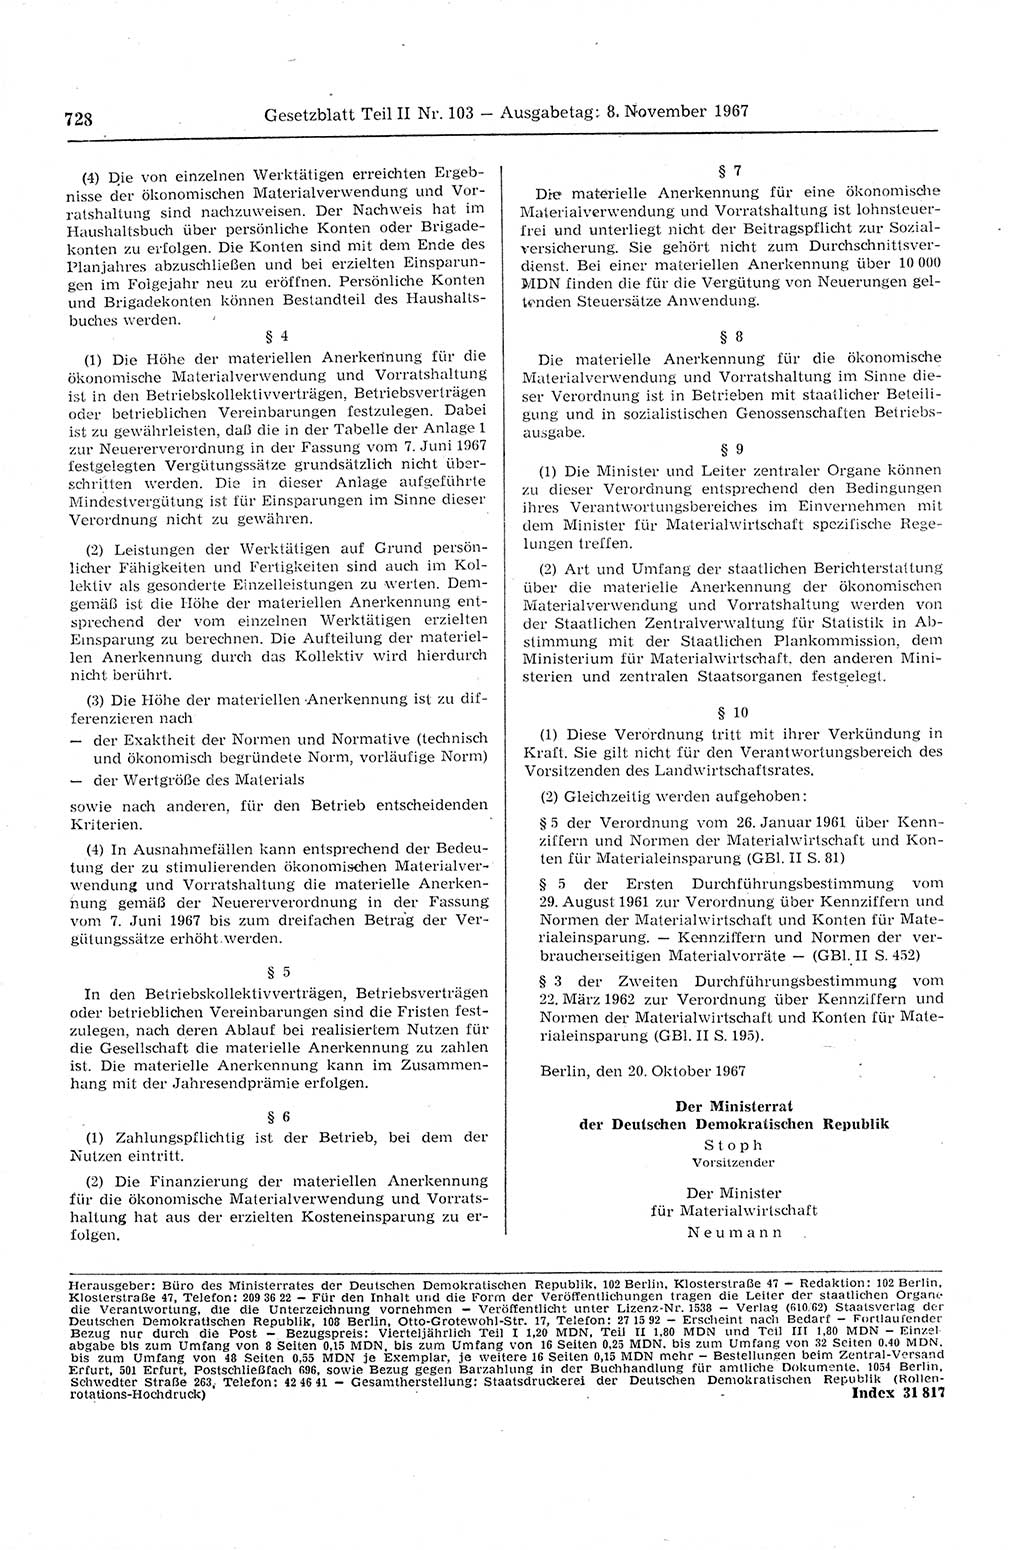 Gesetzblatt (GBl.) der Deutschen Demokratischen Republik (DDR) Teil ⅠⅠ 1967, Seite 728 (GBl. DDR ⅠⅠ 1967, S. 728)